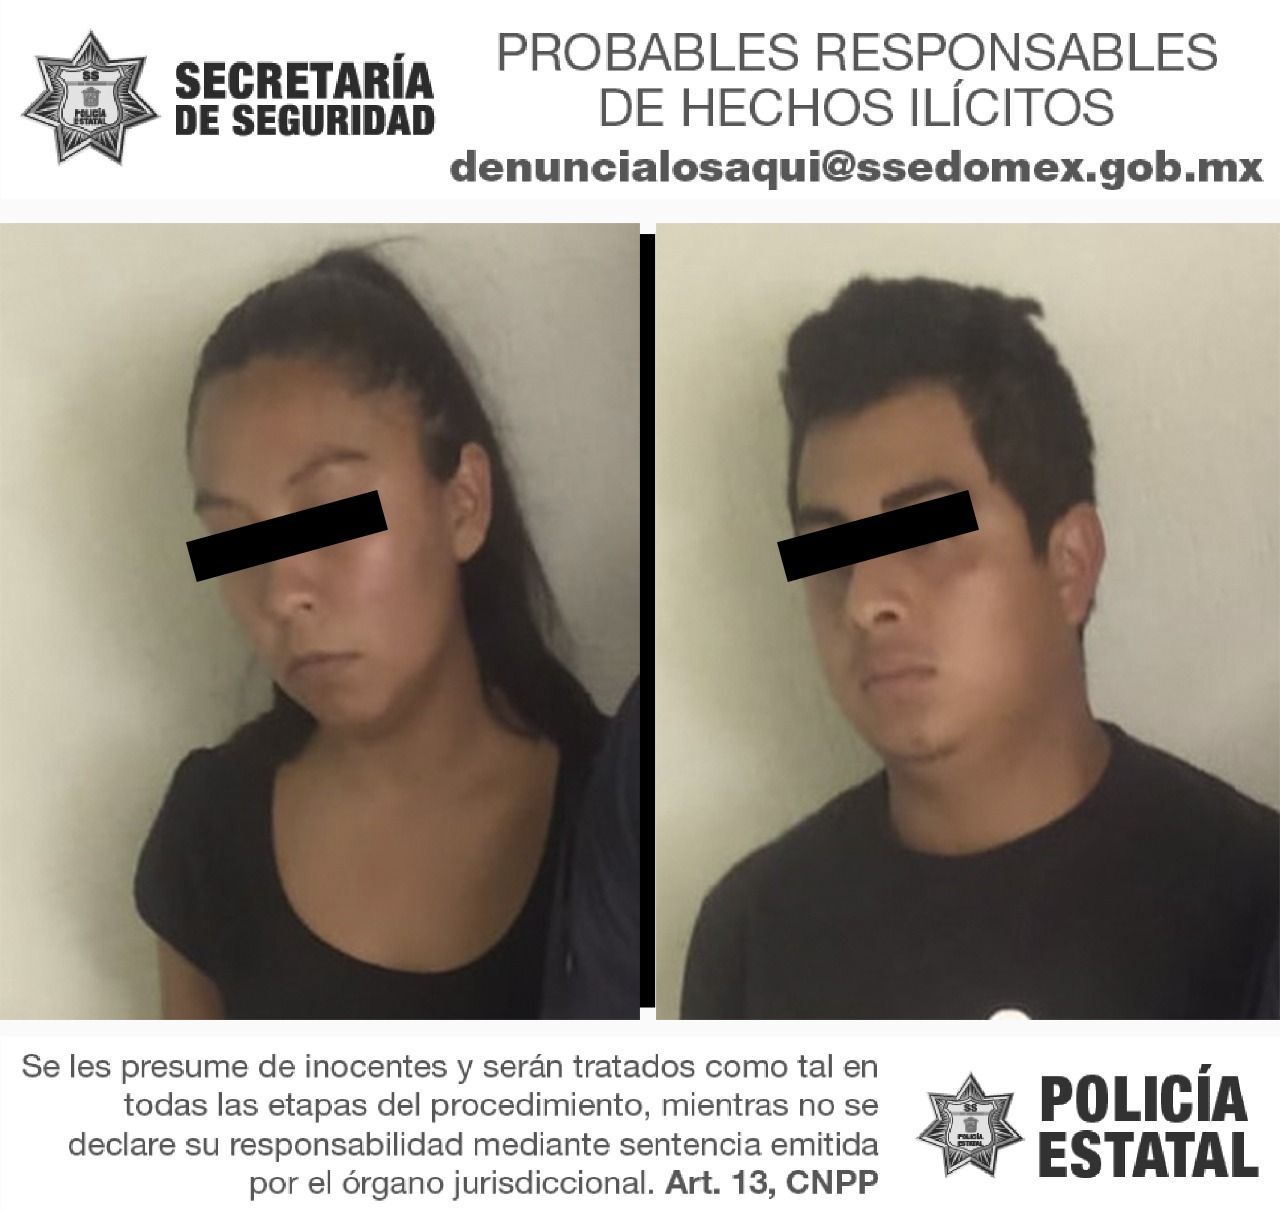 #Por extorsión detienen a dos en Texcoco